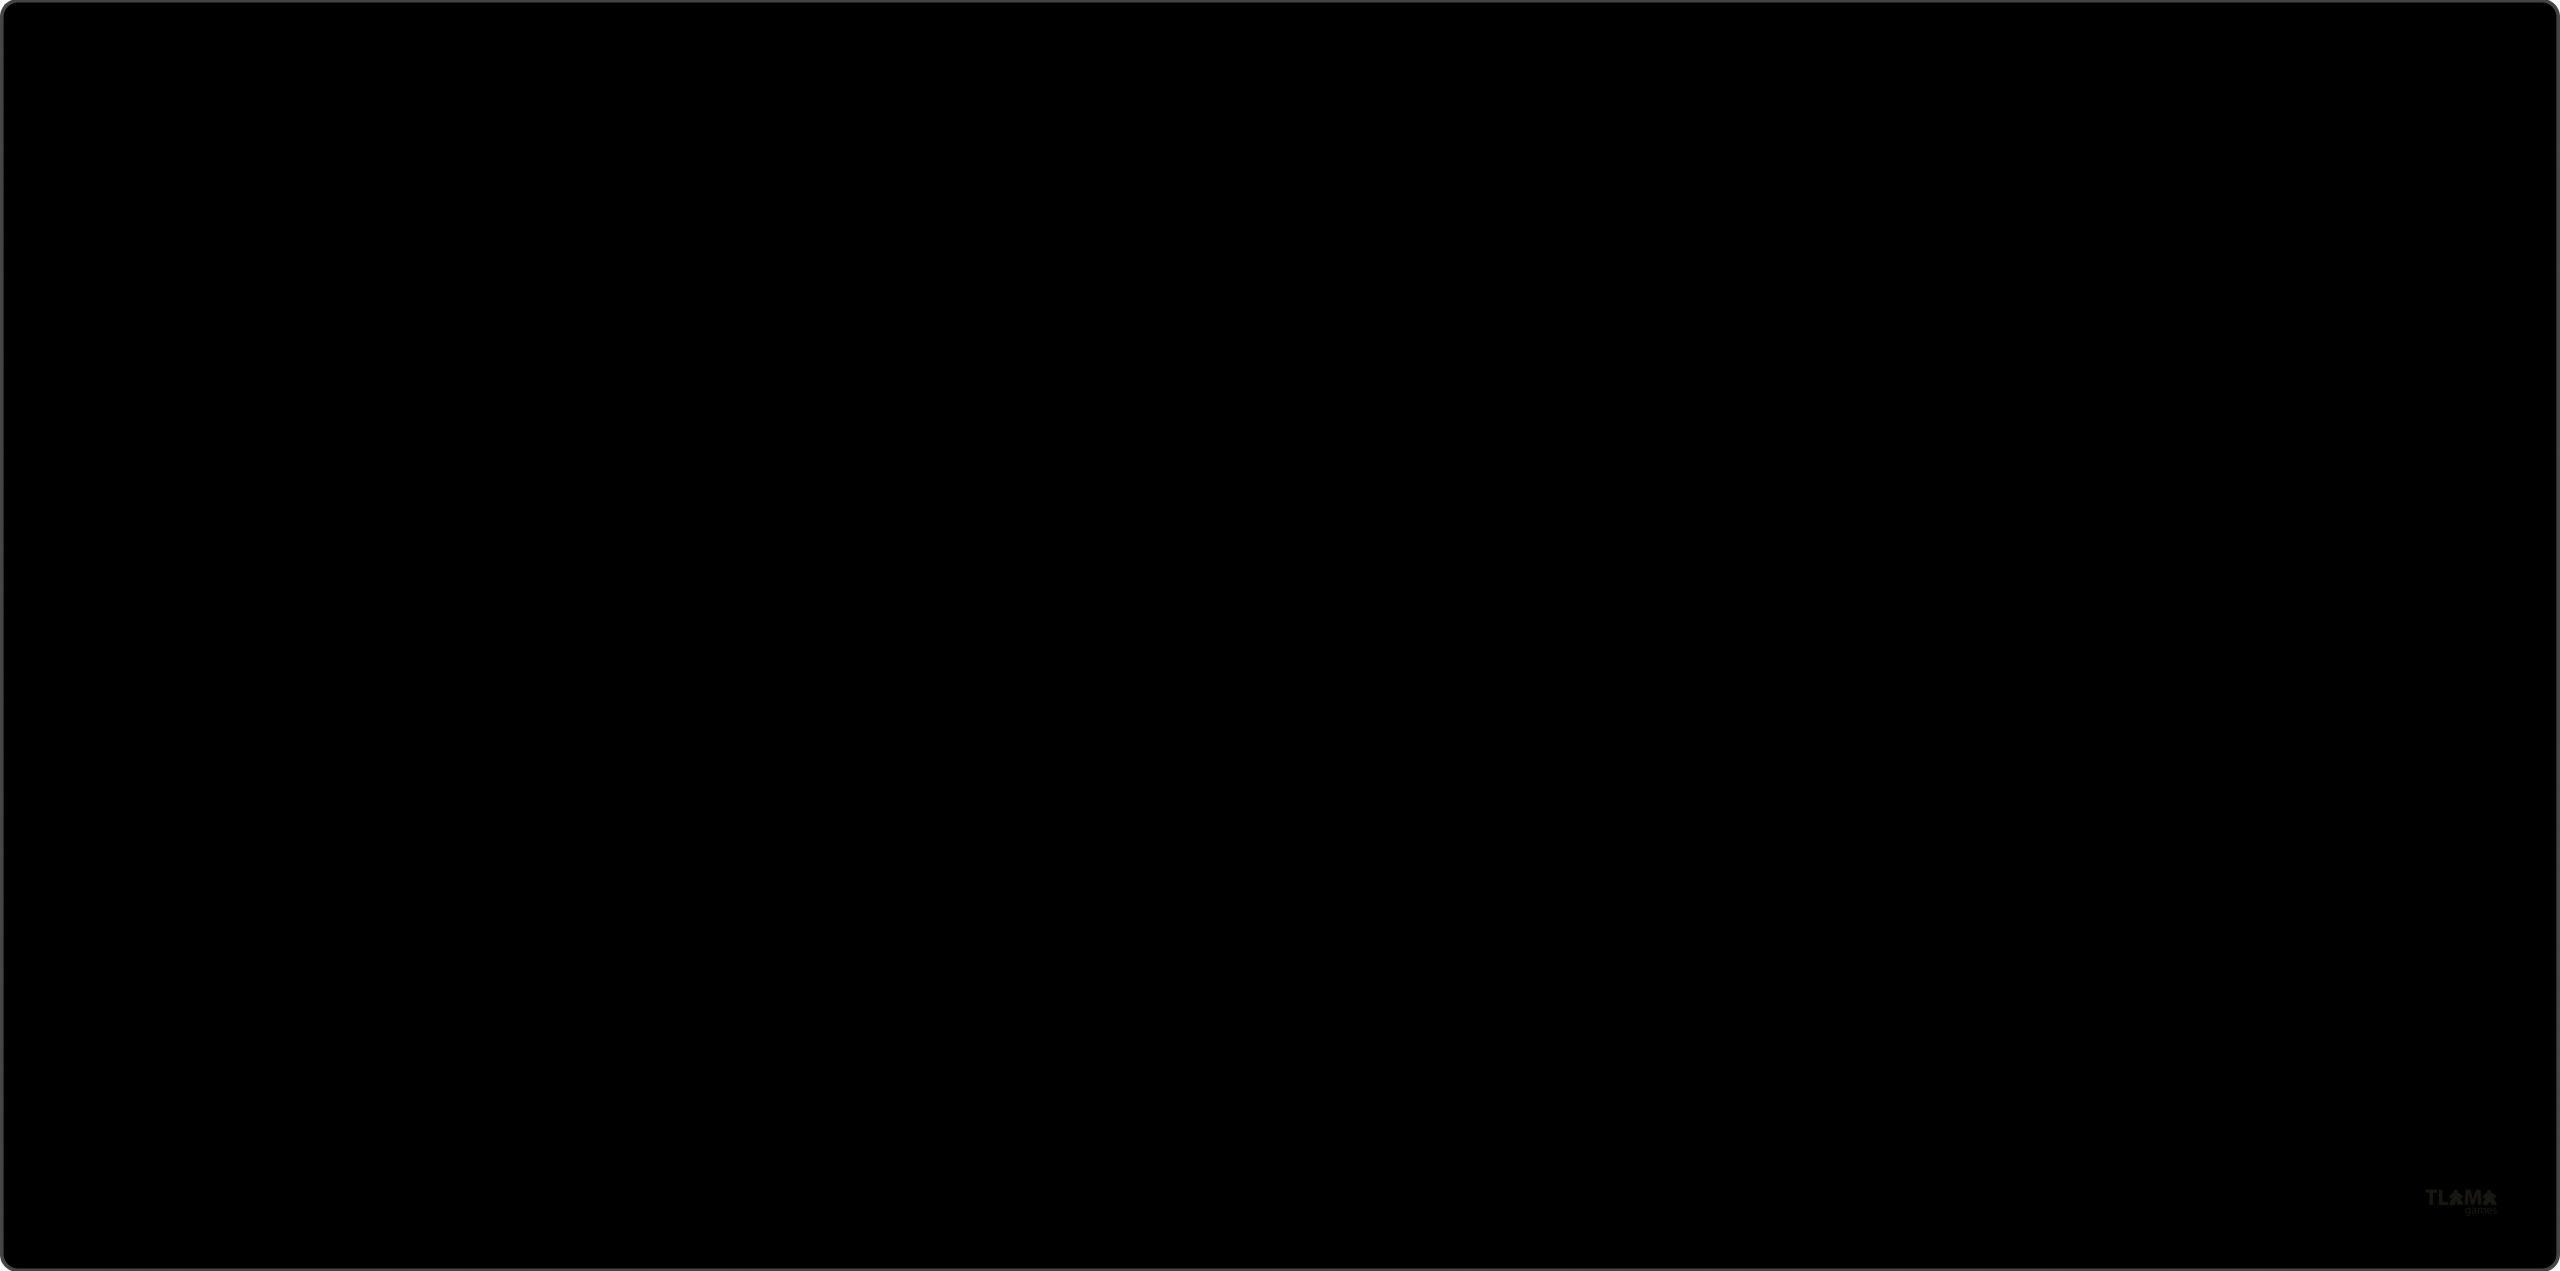 TLAMA games Herní podložka (playmat) 120 x 90 cm (4'x3') - různé motivy Barva: Black (černá) (neoprenová